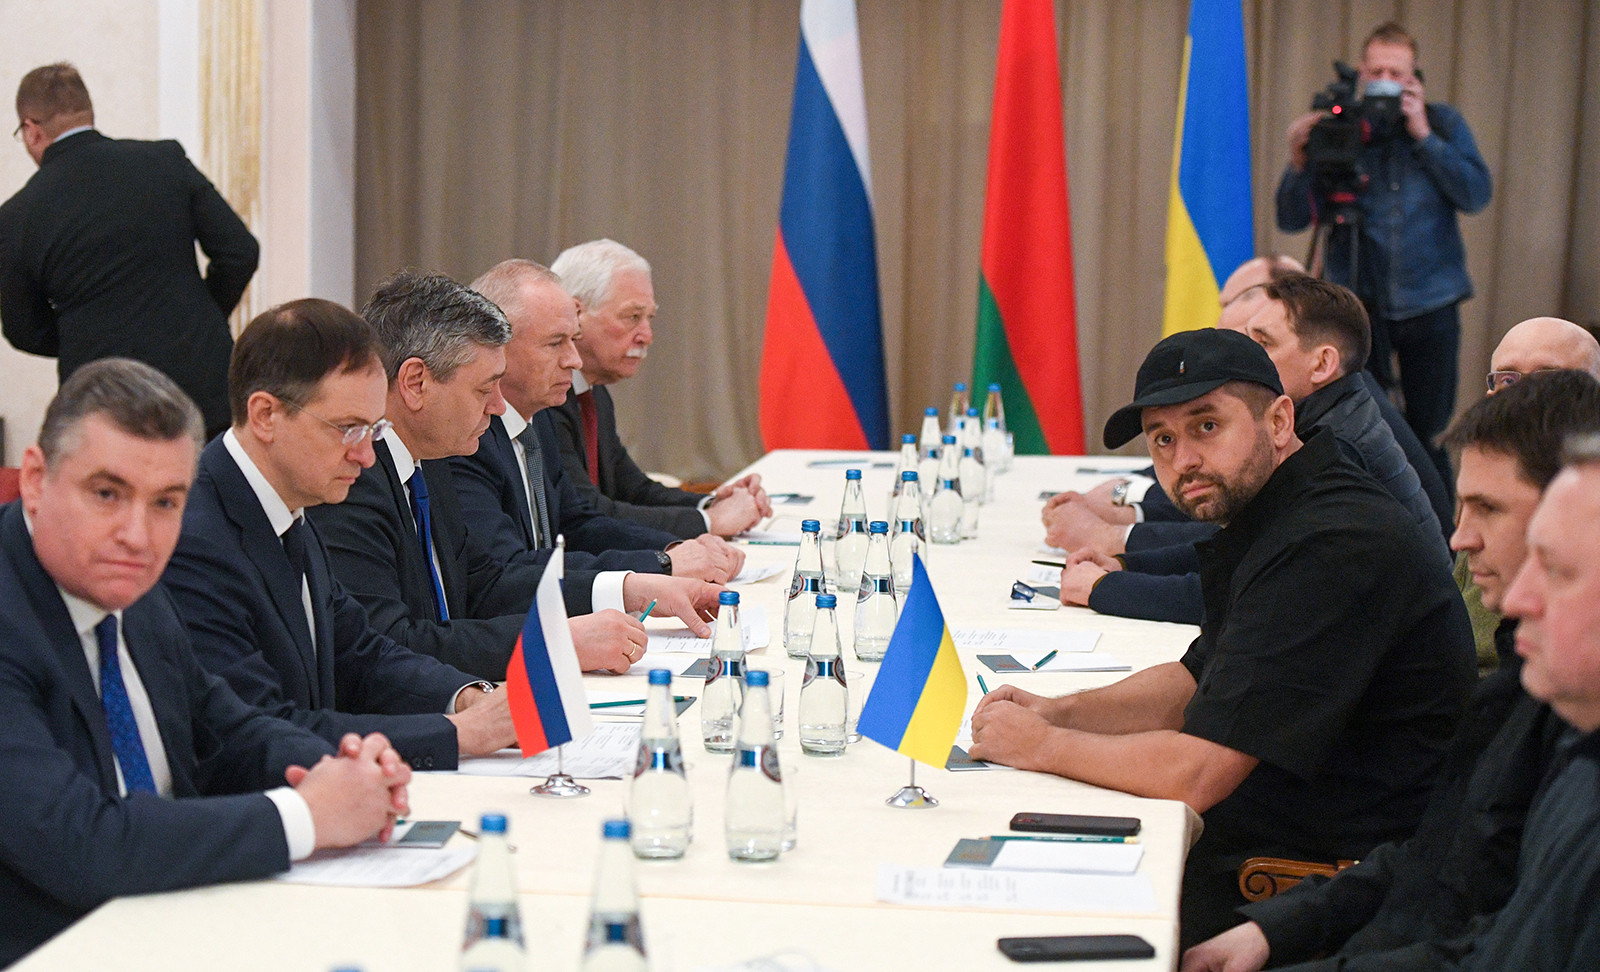 ОХУ-ын Төрийн Дум болон Украины парламентын төлөөлөгчид 2-р сарын 28-нд Беларусь улсад хэлэлцээ хийхээр уулзав. (Alexander Kryazhev/TASS/Reuters)